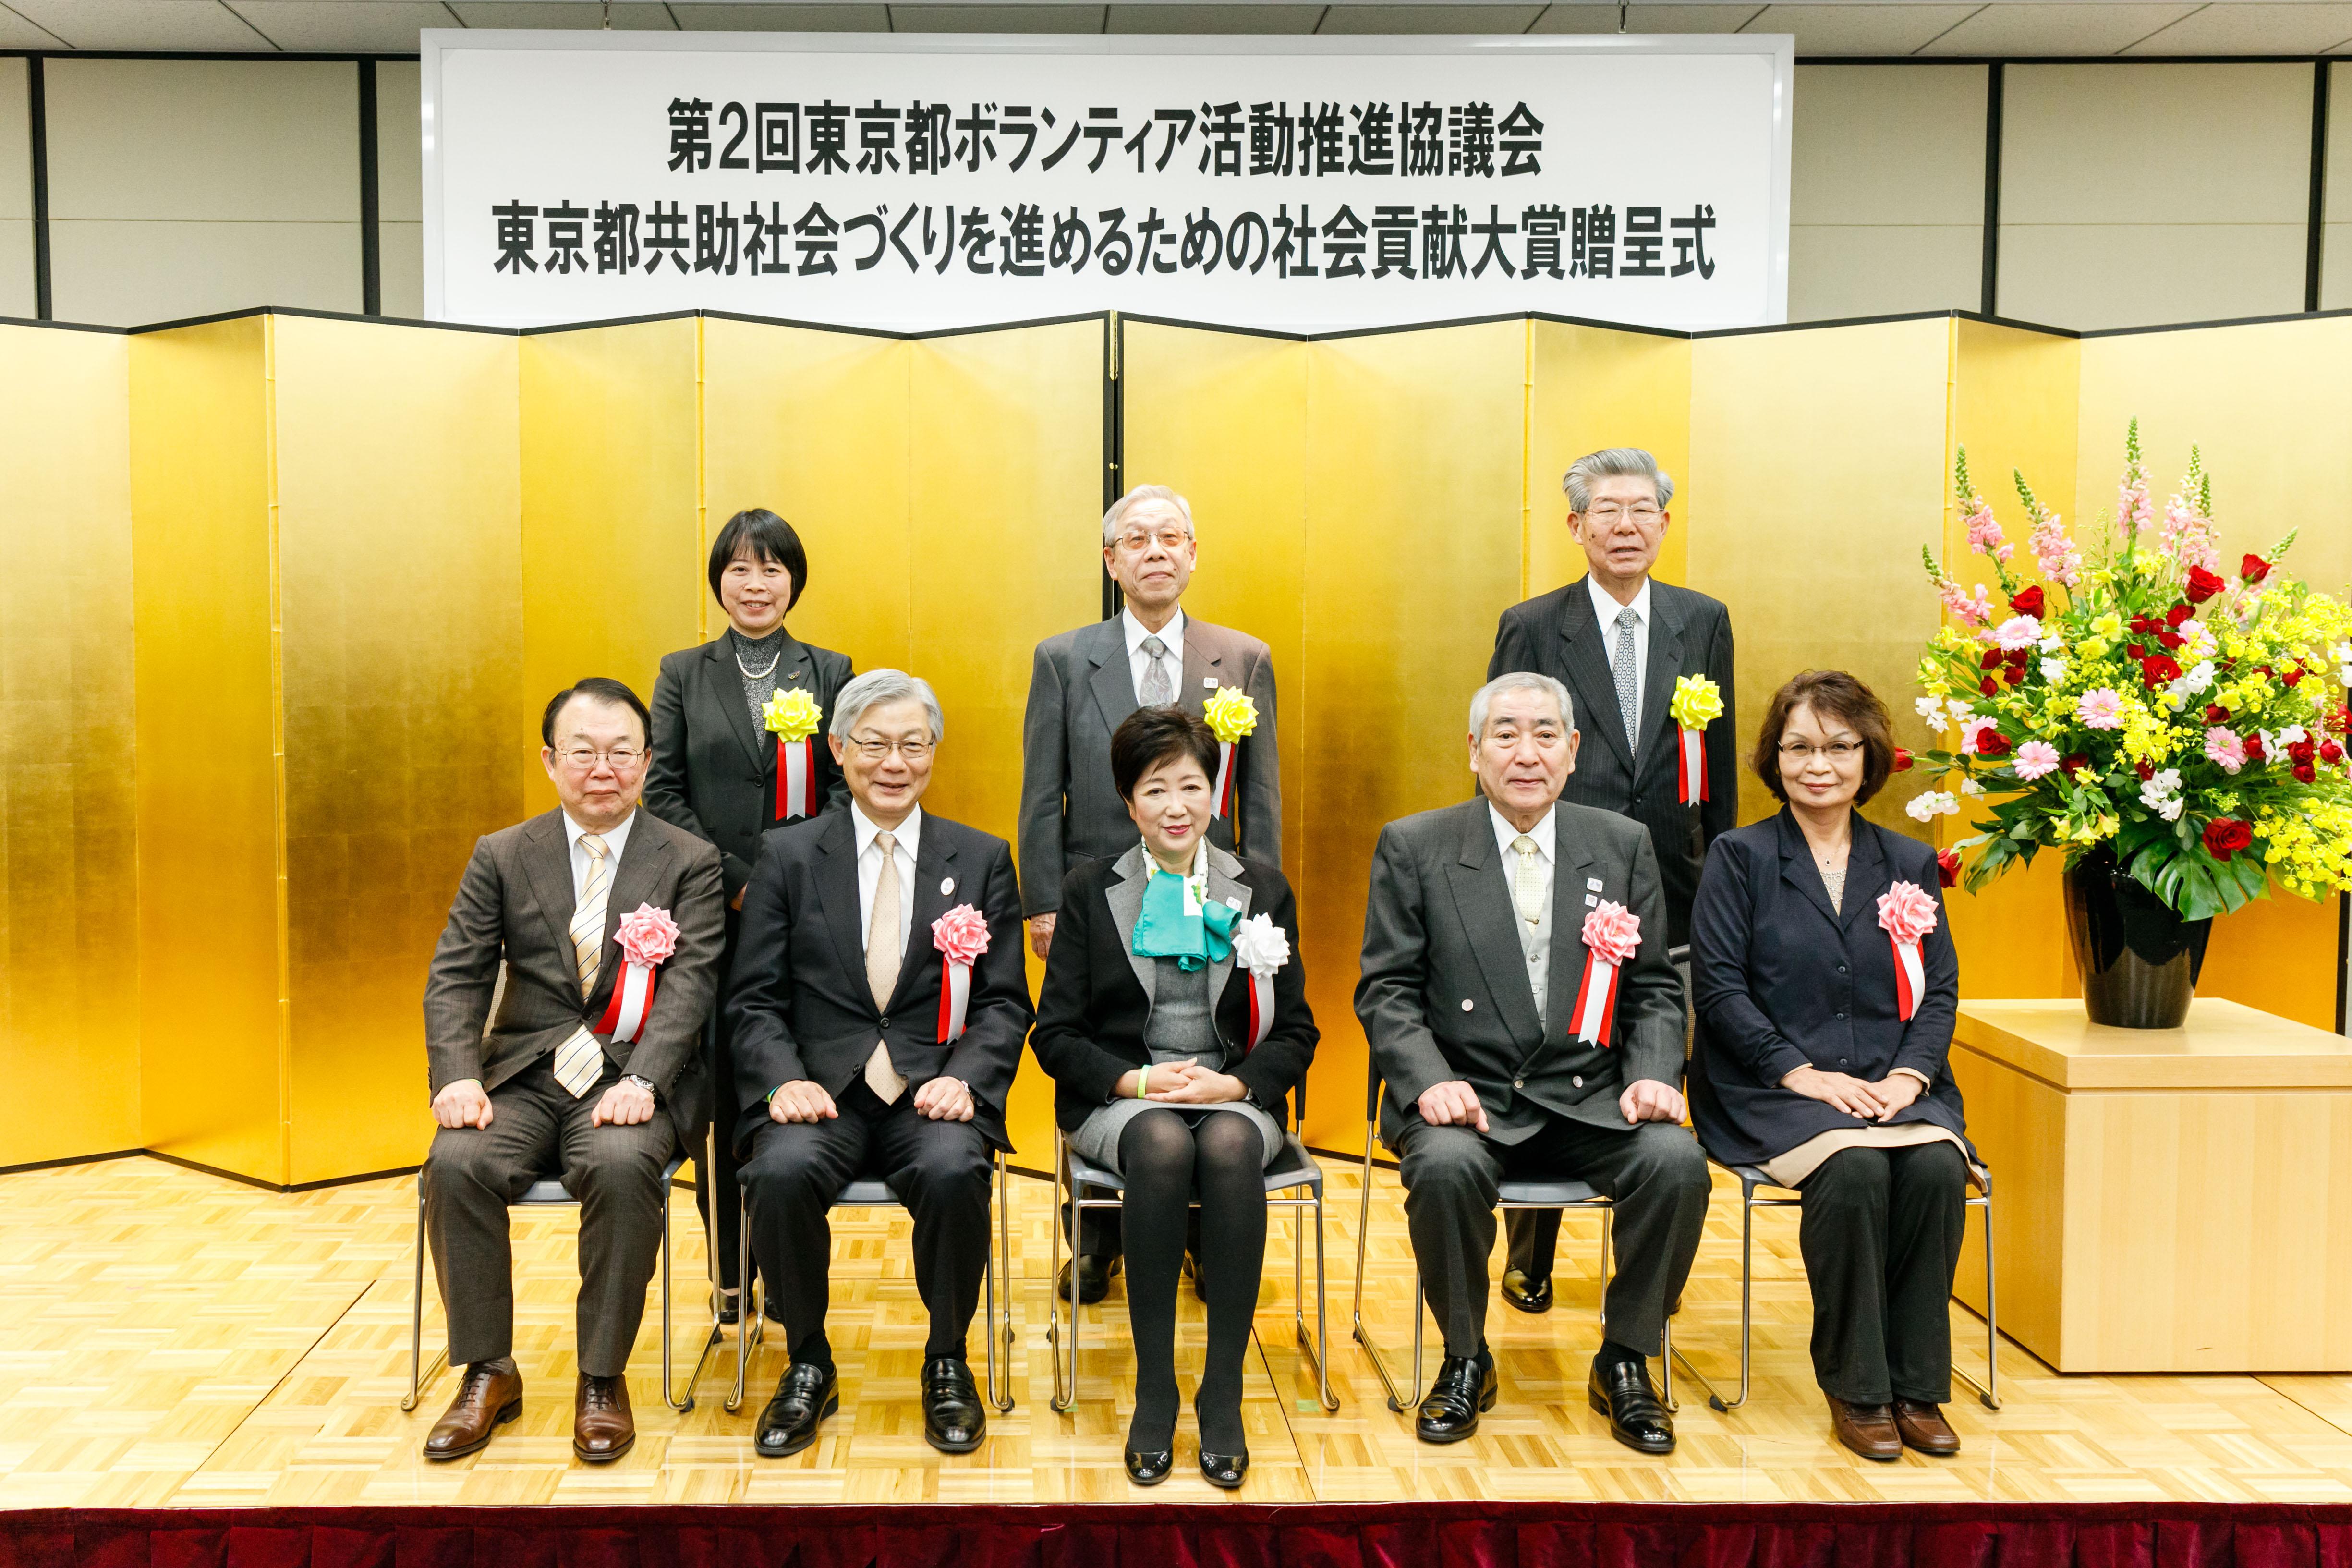 「東京都共助社会づくりを進めるための社会貢献大賞」表彰式の様子